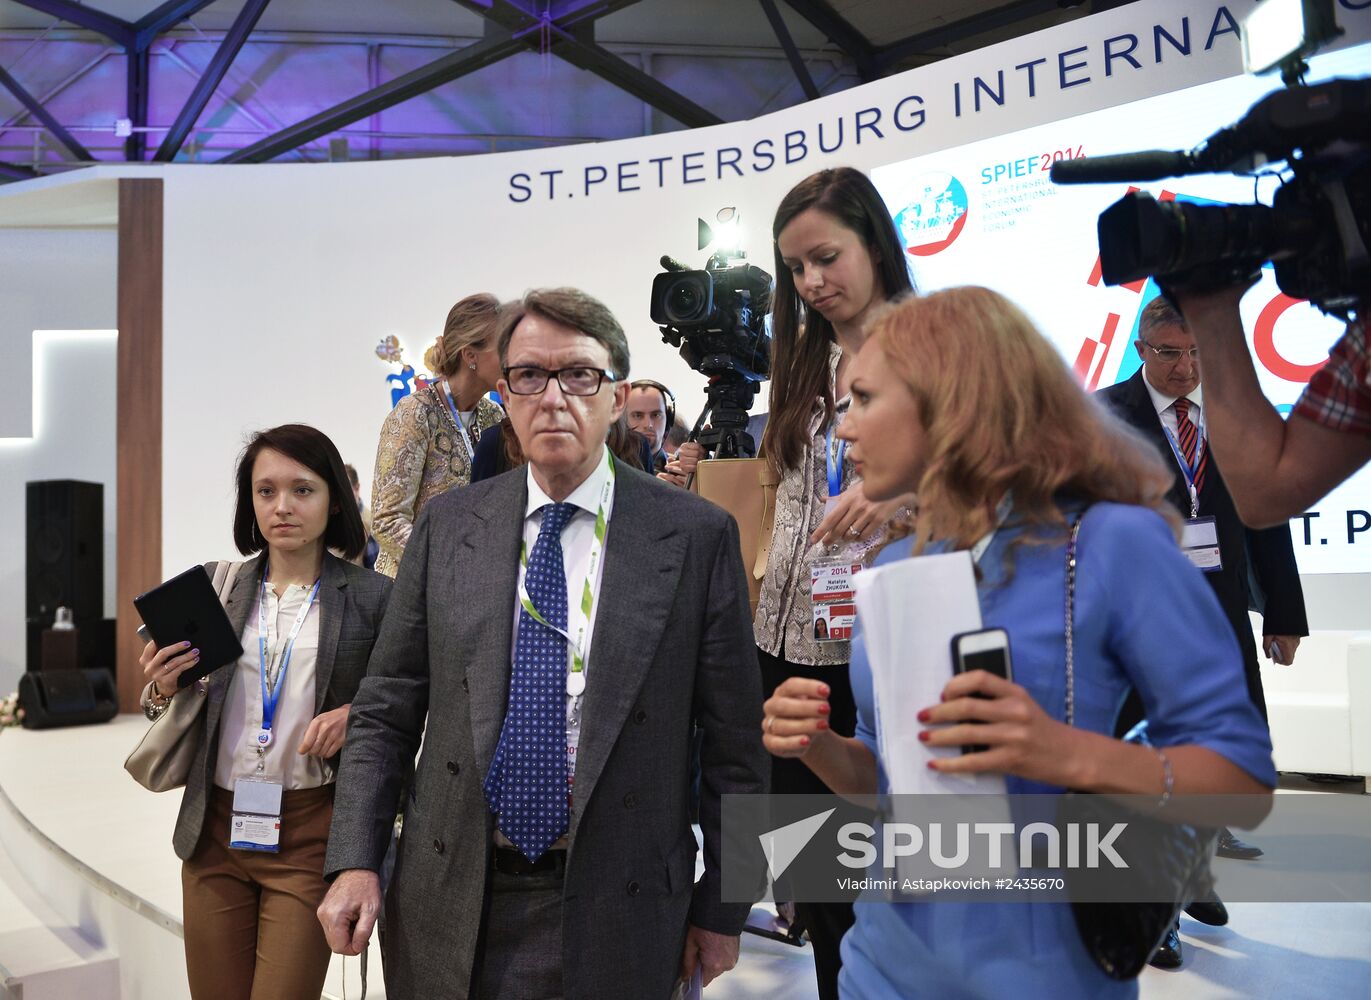 St Petersburg hosts Global CEO Summit